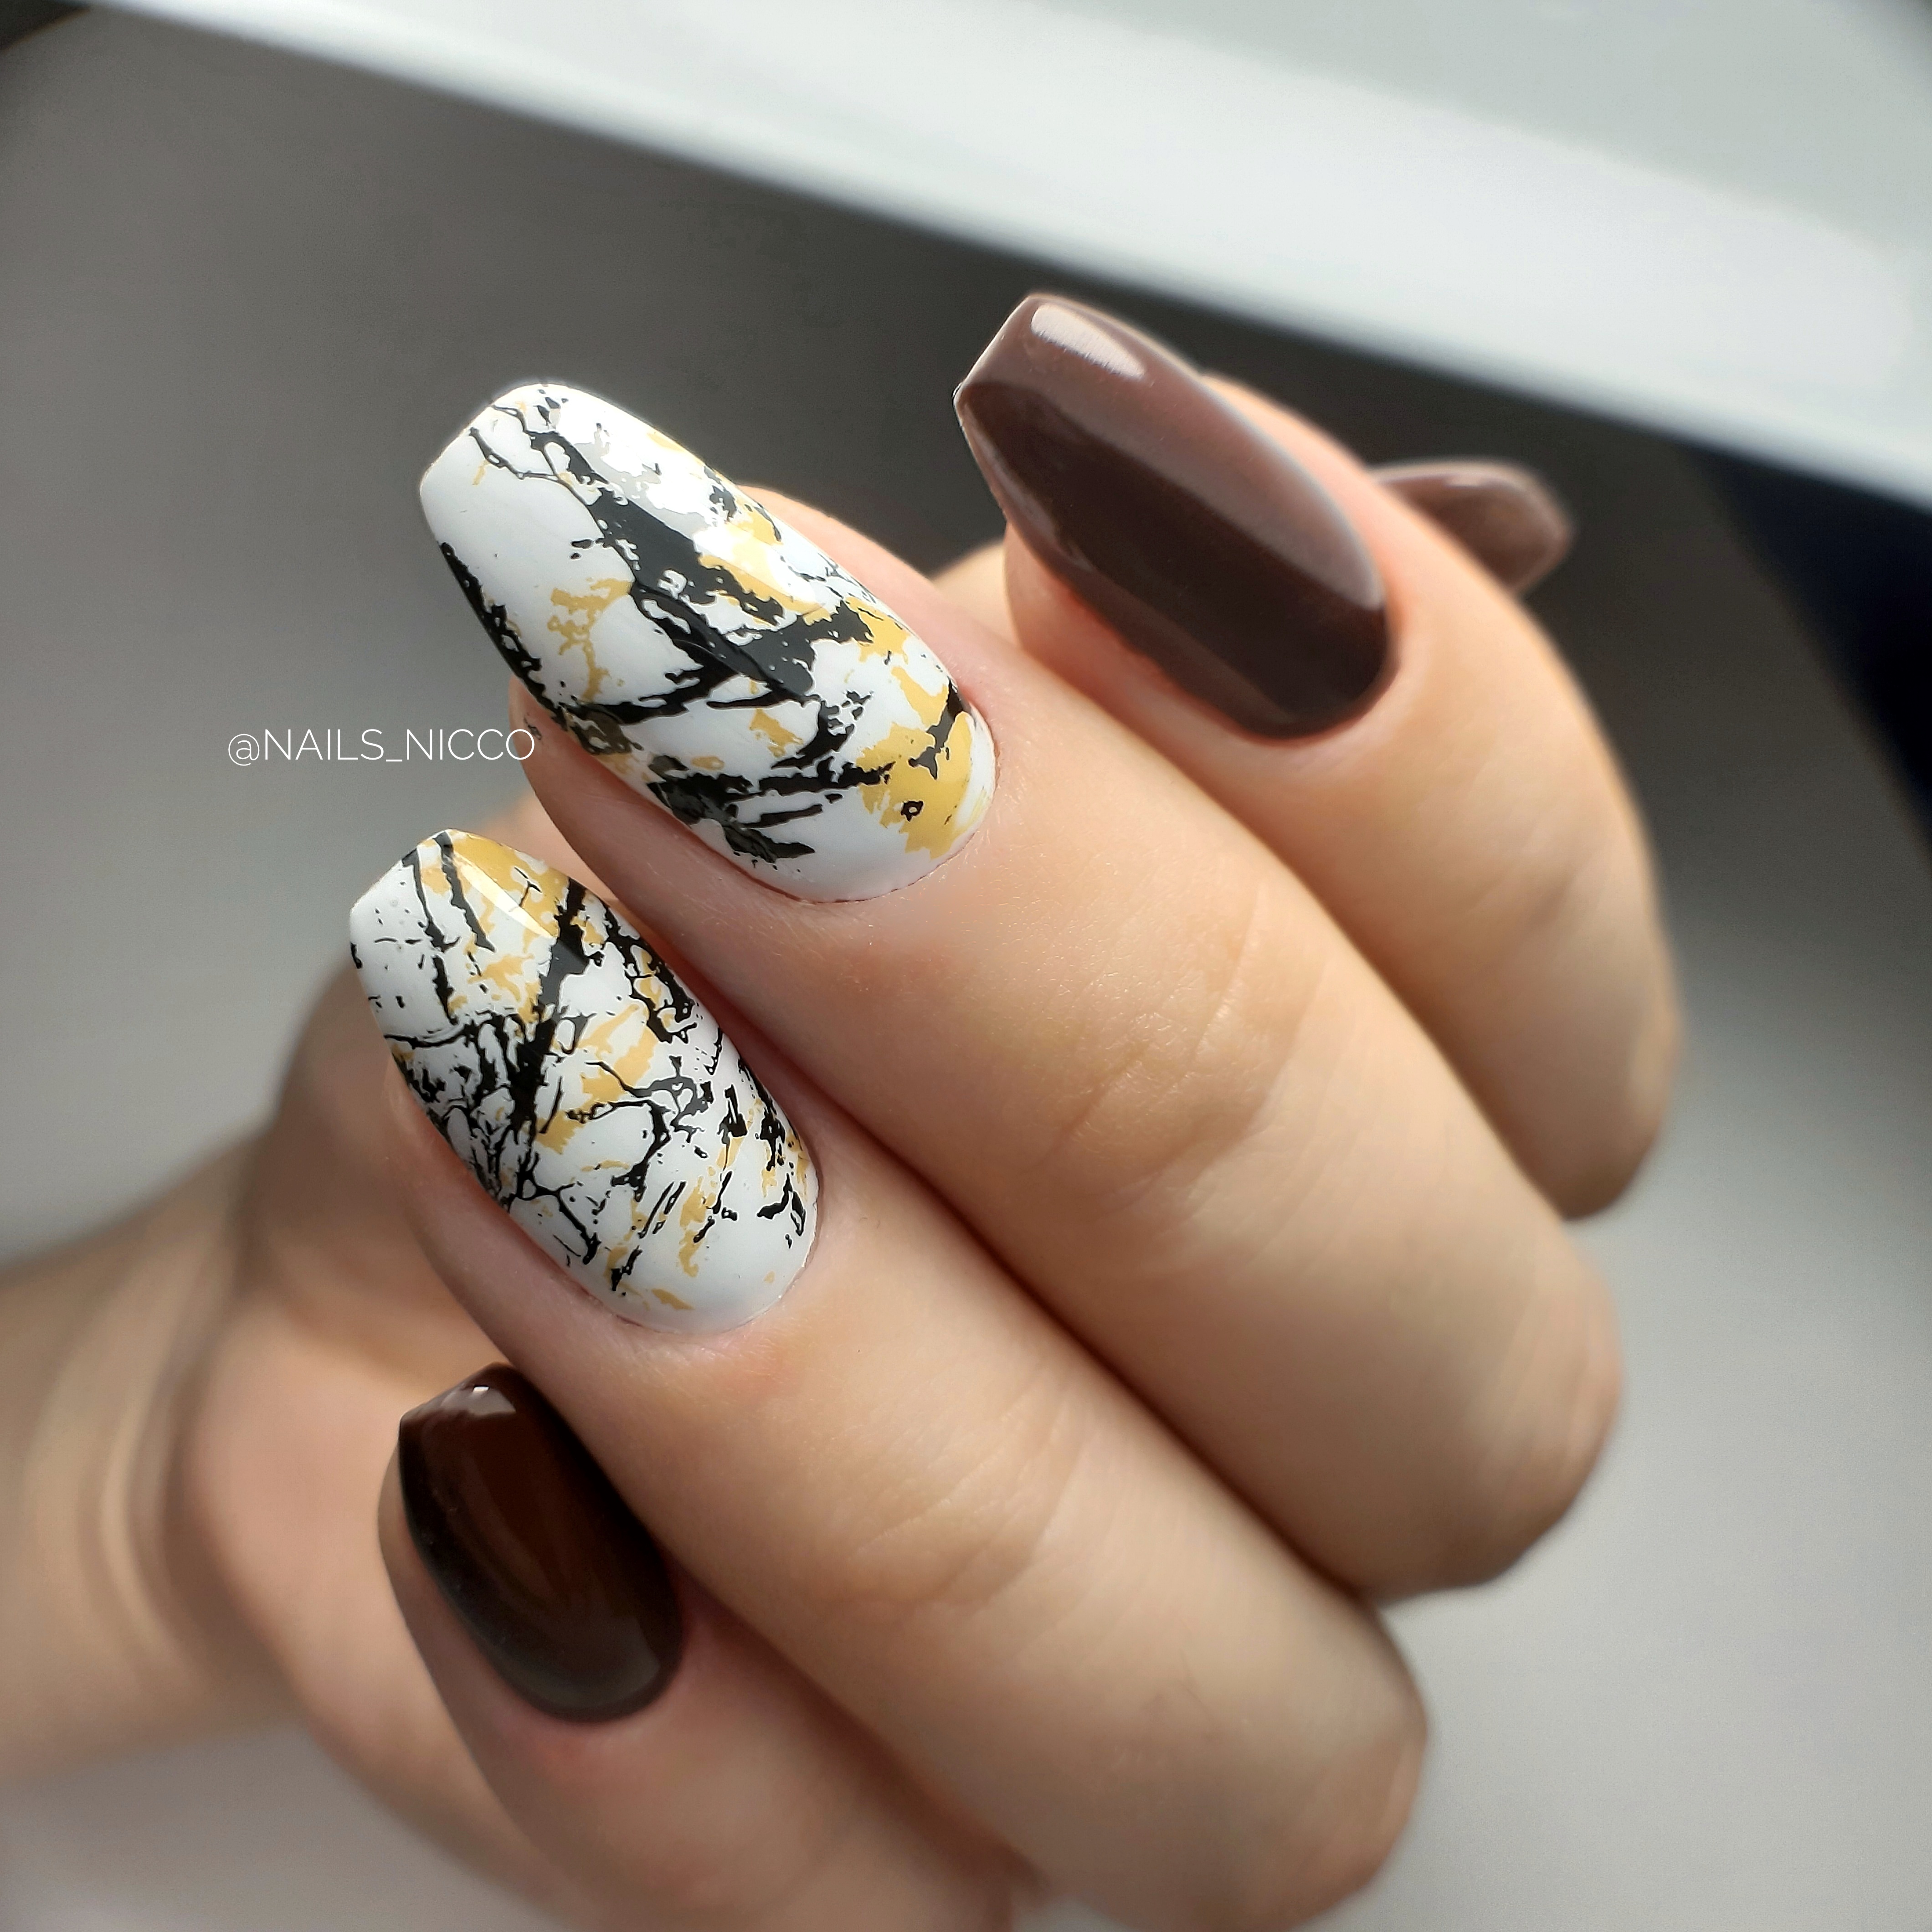 Маникюр с абстрактным рисунком в шоколадном цвете на длинные ногти.